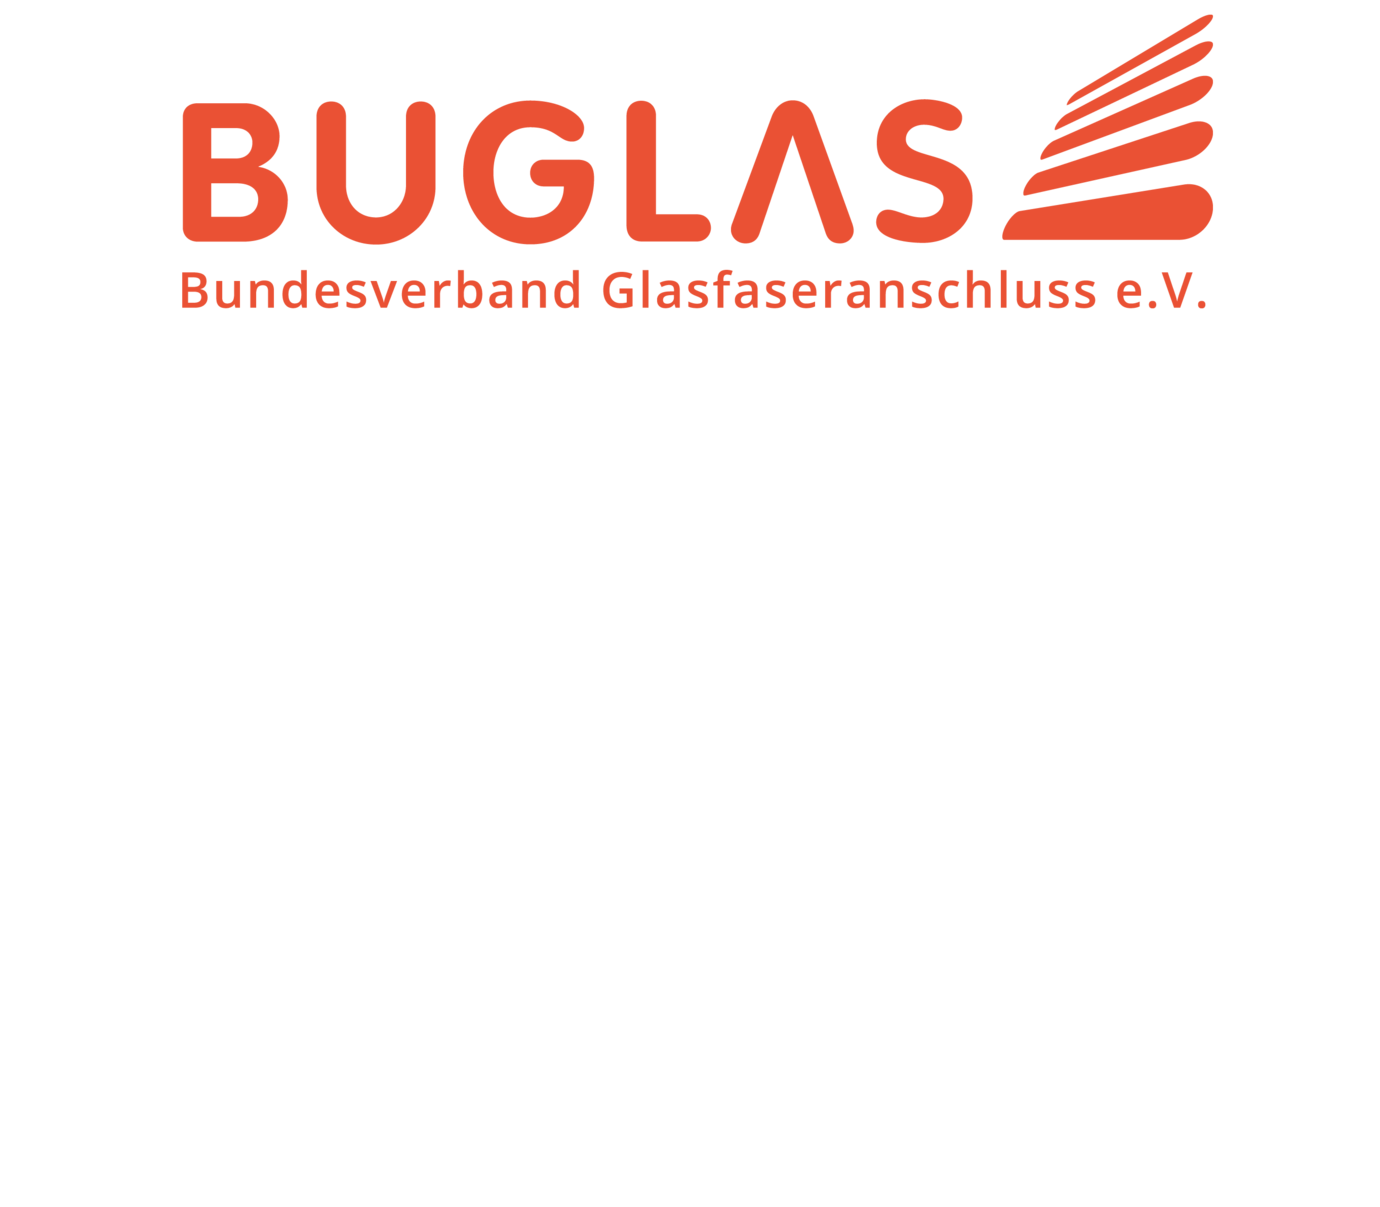 Der ZBmSH wird Mitglied im Buglas – 2019